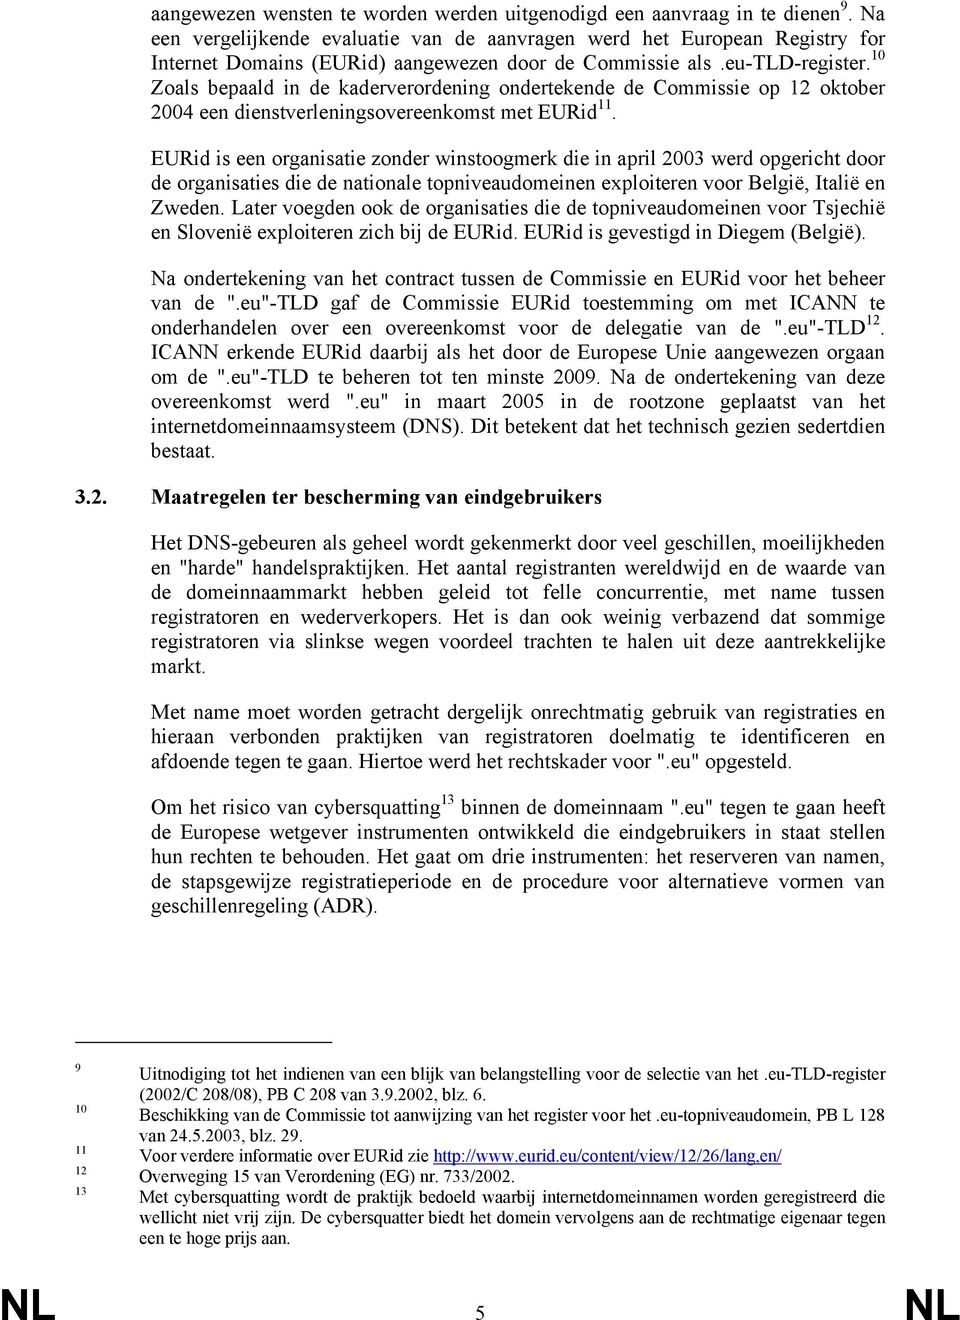 10 Zoals bepaald in de kaderverordening ondertekende de Commissie op 12 oktober 2004 een dienstverleningsovereenkomst met EURid 11.